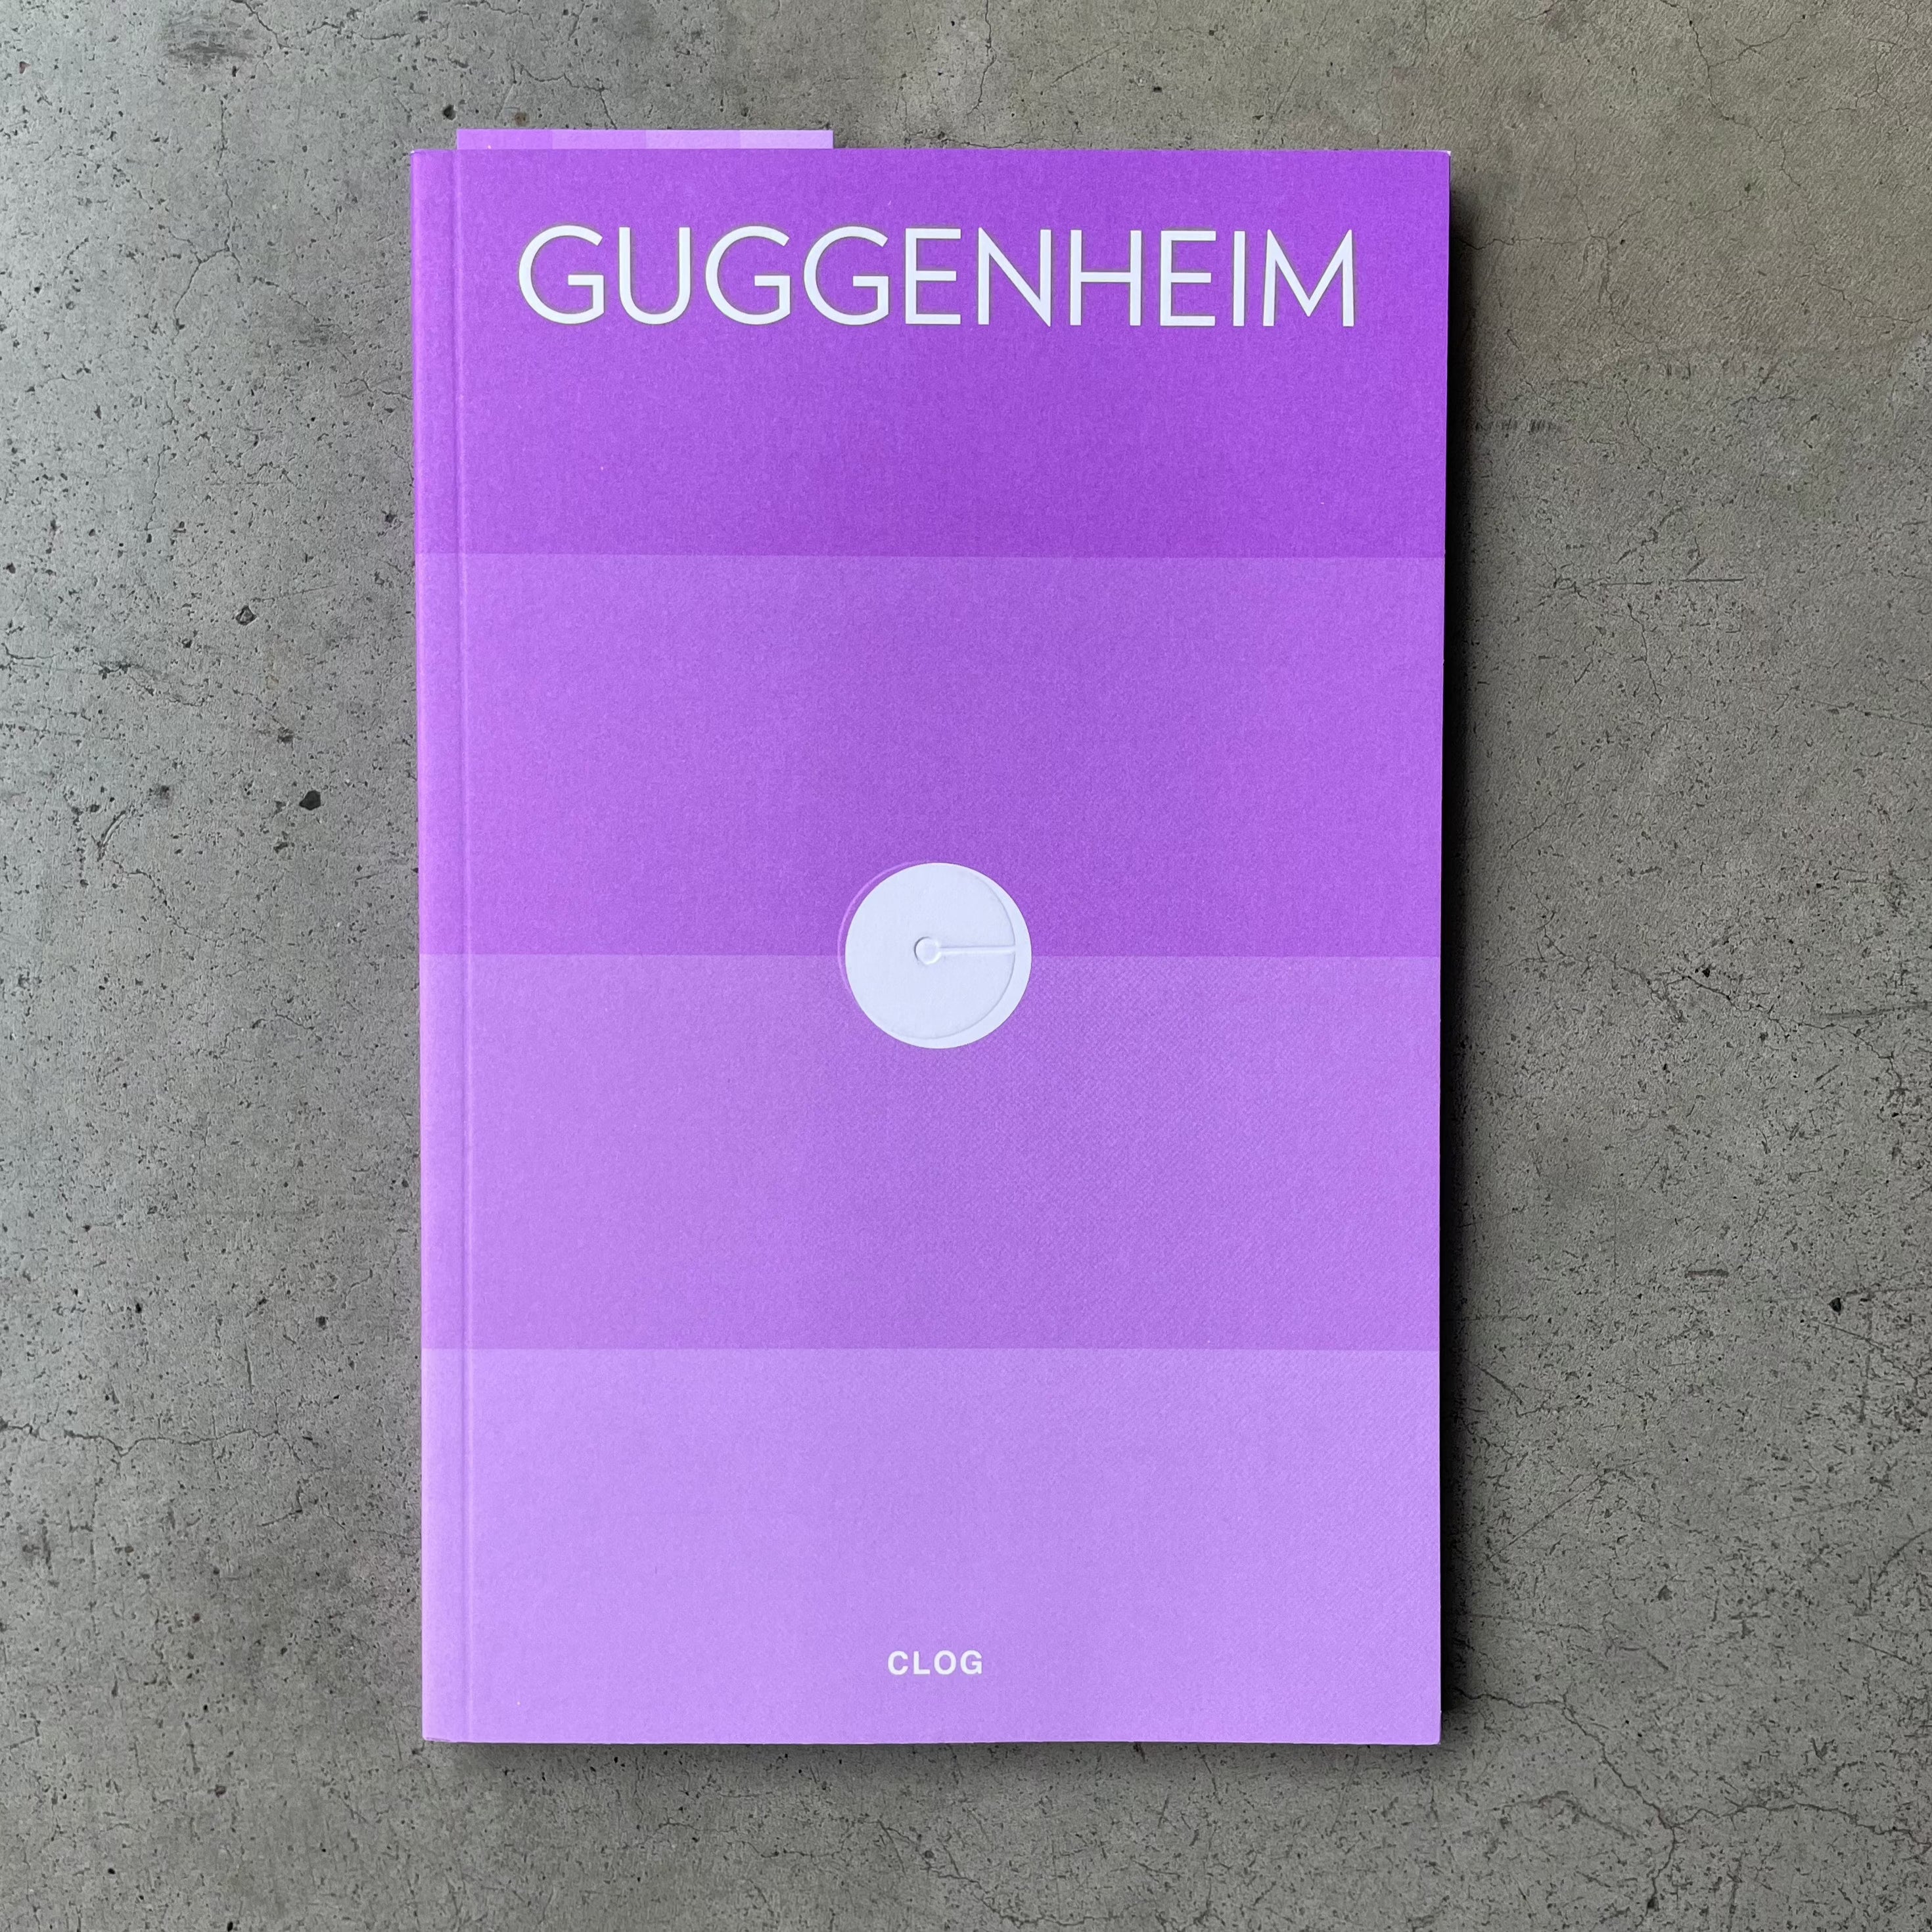 Clog: Guggenheim